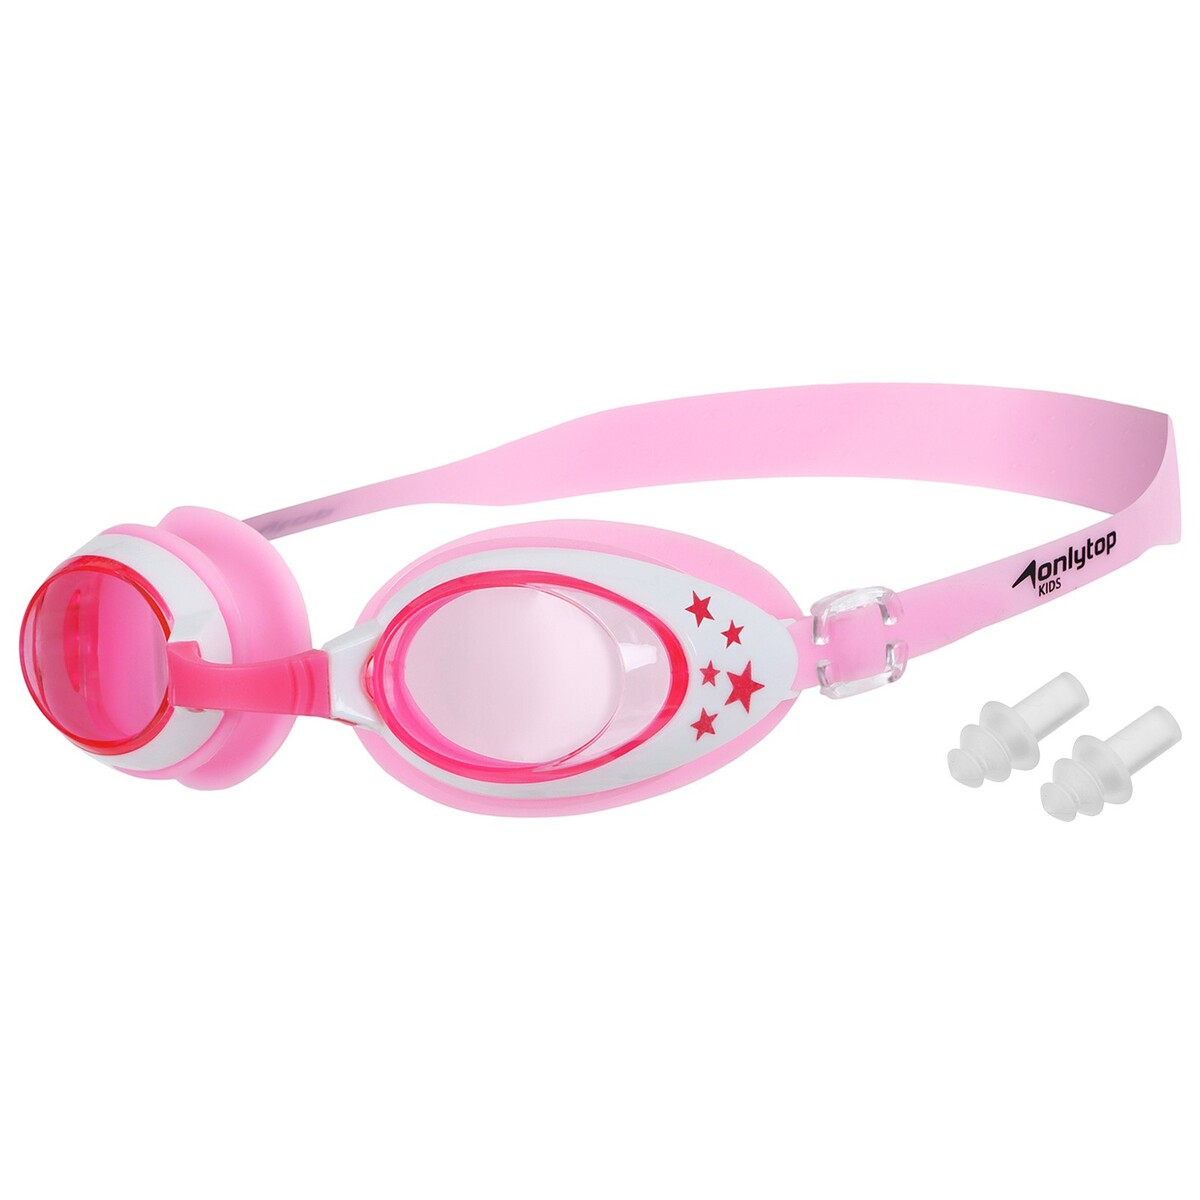 Очки для плавания детские onlytop, беруши, цвет розовый очки для плавания speedo futura classic 8 10898b572a